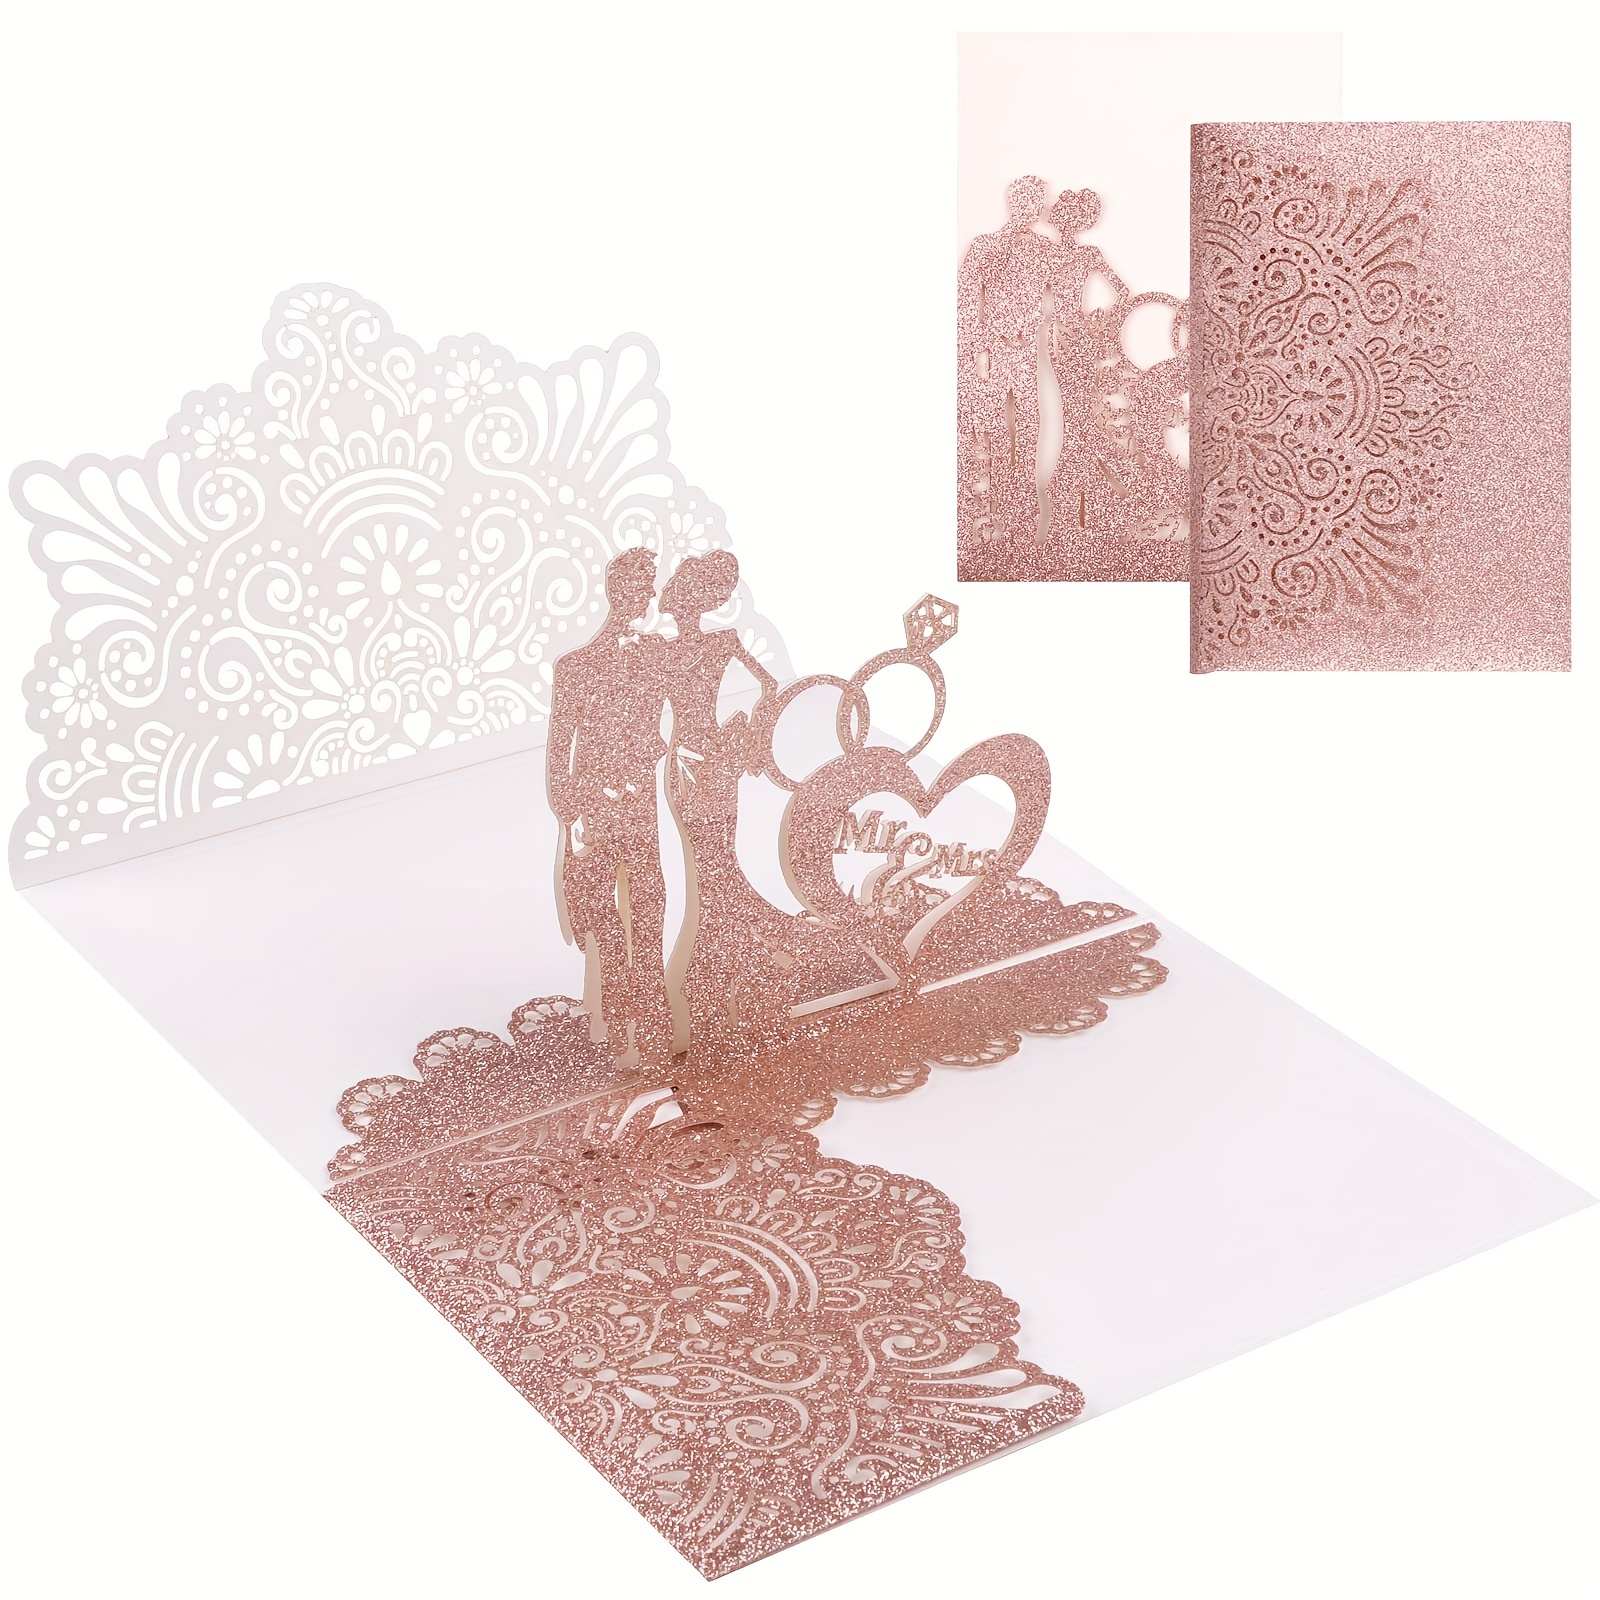 

Une Carte De Mariage En 3D Avec Des Mariés En Relief, Des Roses Pailletées Dorées Et Des Vœux De Bonheur Pour Un Anniversaire De Mariage. Un Cadeau Parfait Pour Féliciter Les Mariés.